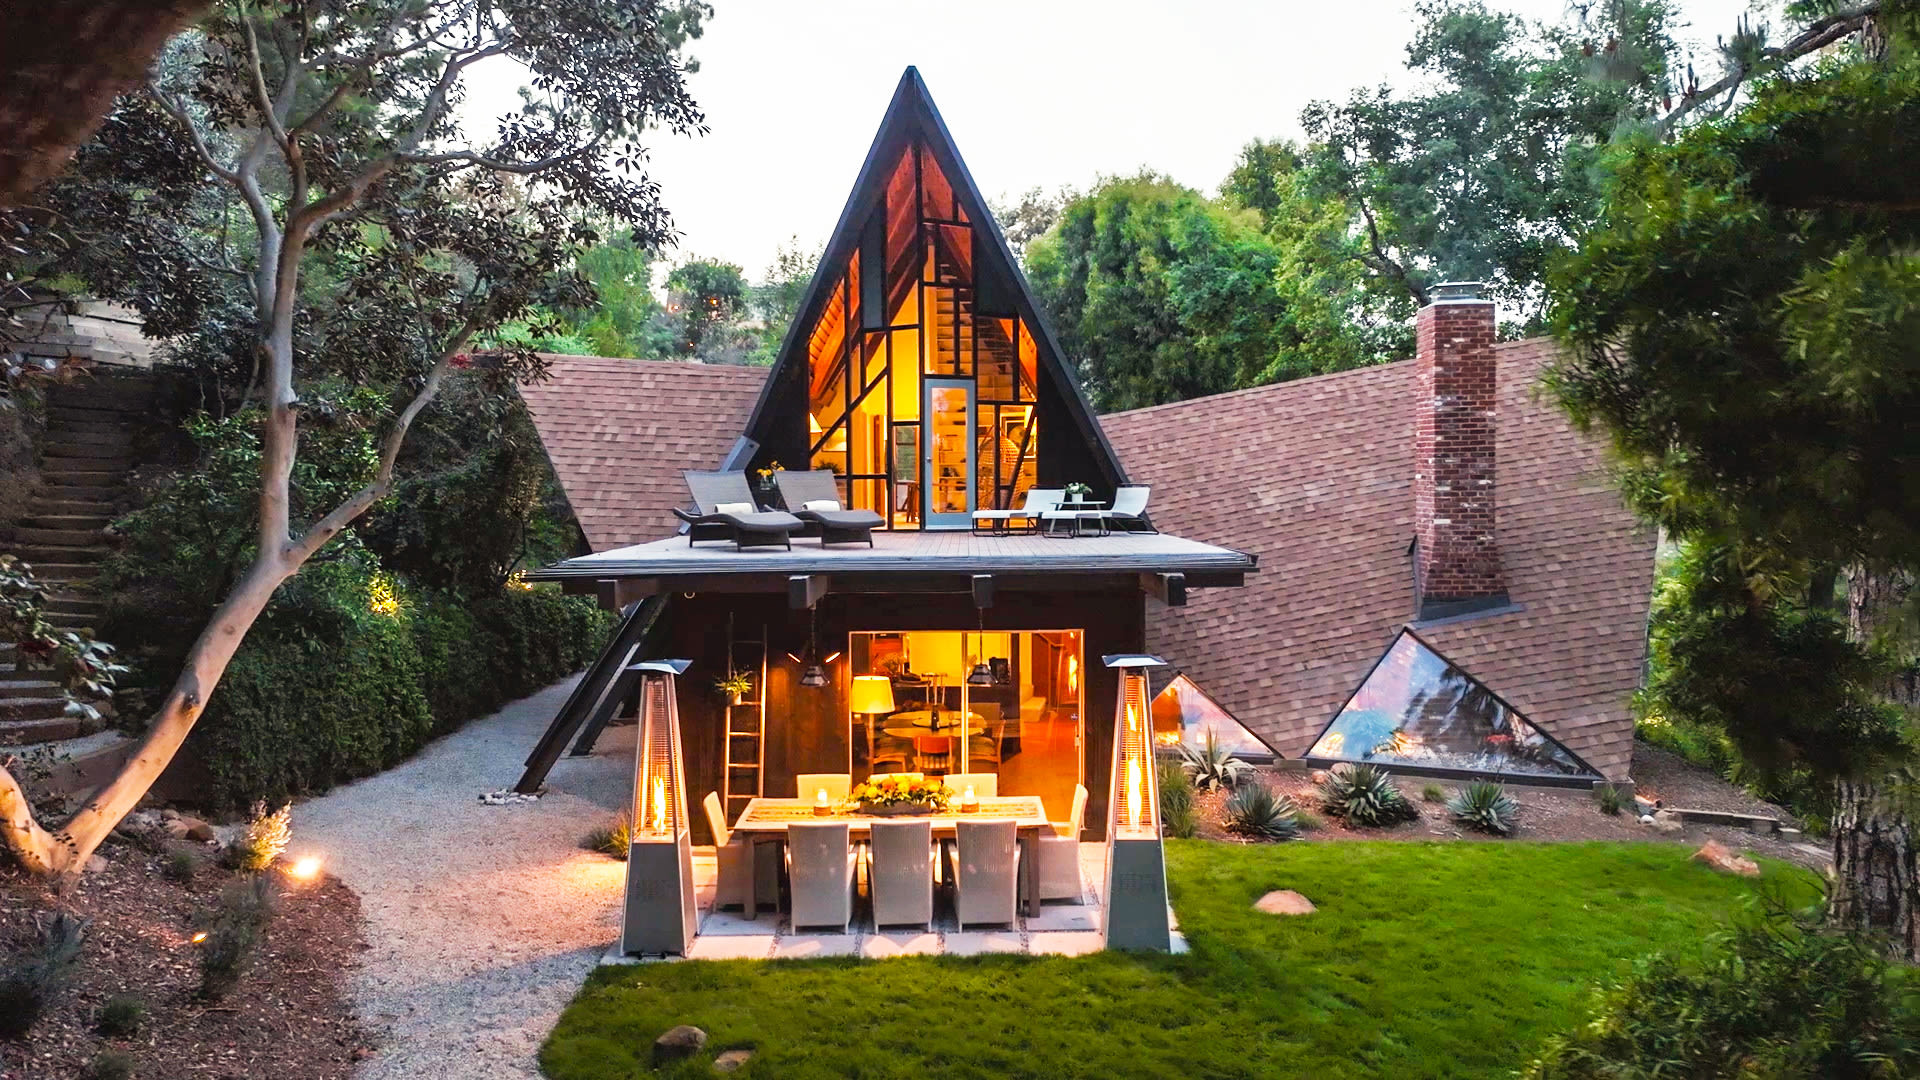 Egy varázslatos Los Angeles-i otthon belseje, amely egy mesekönyvben is helyet kaphatna